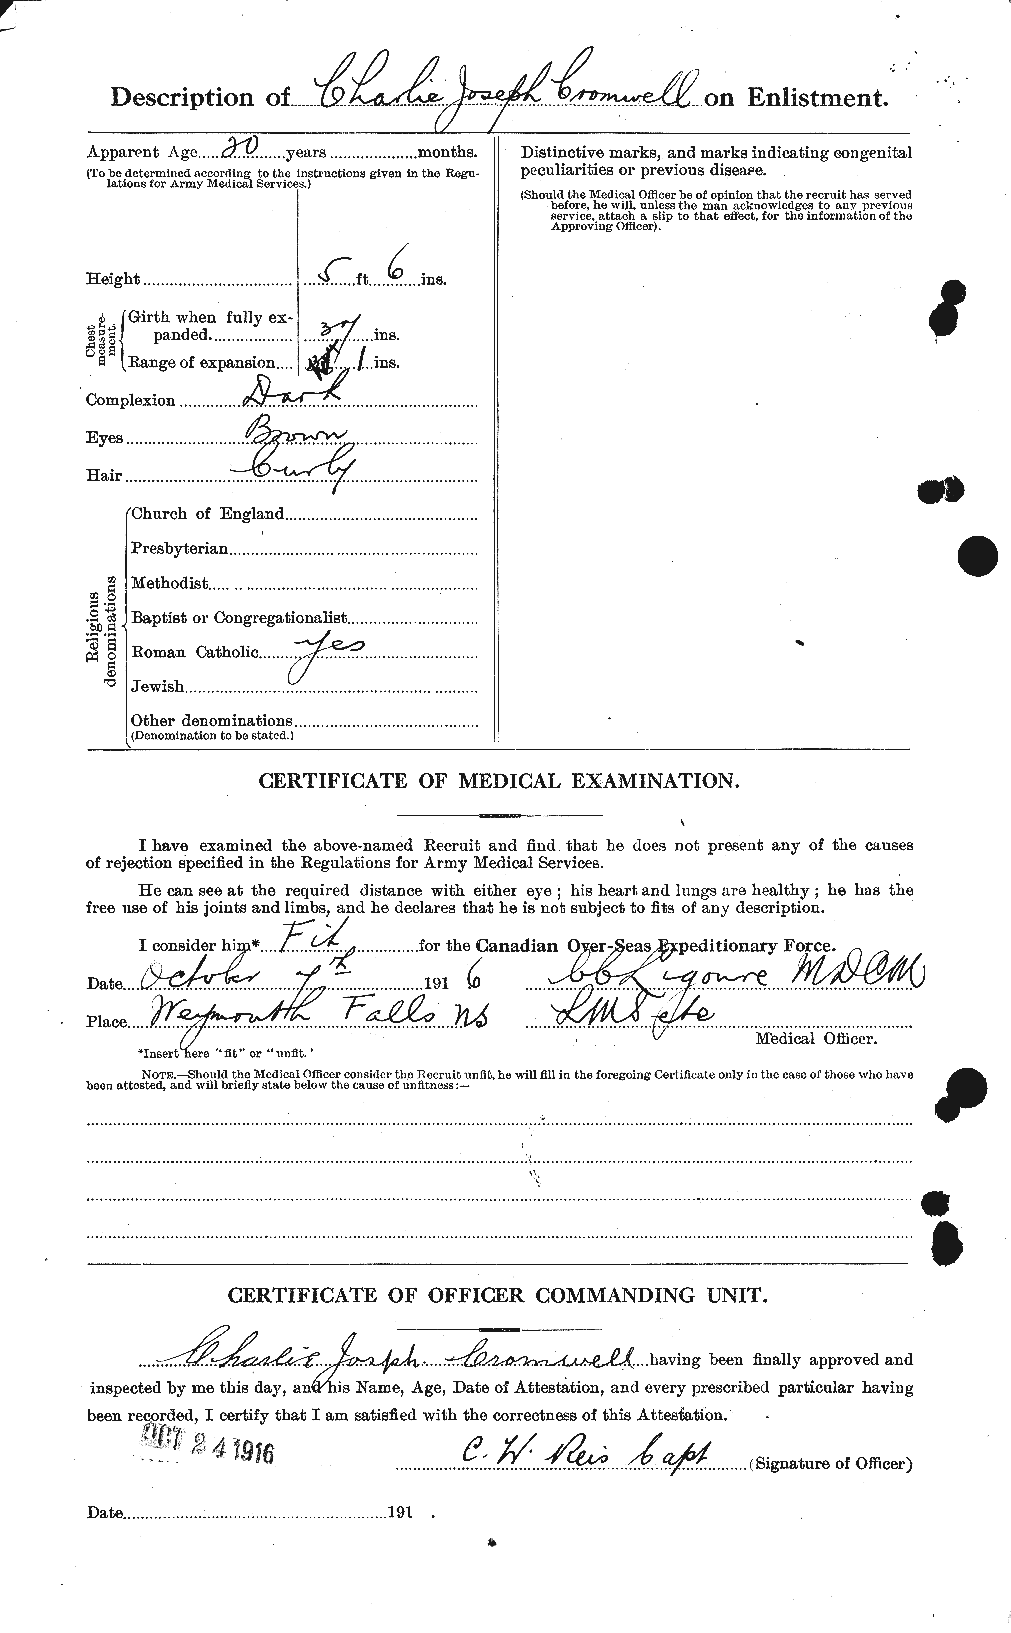 Dossiers du Personnel de la Première Guerre mondiale - CEC 064933b